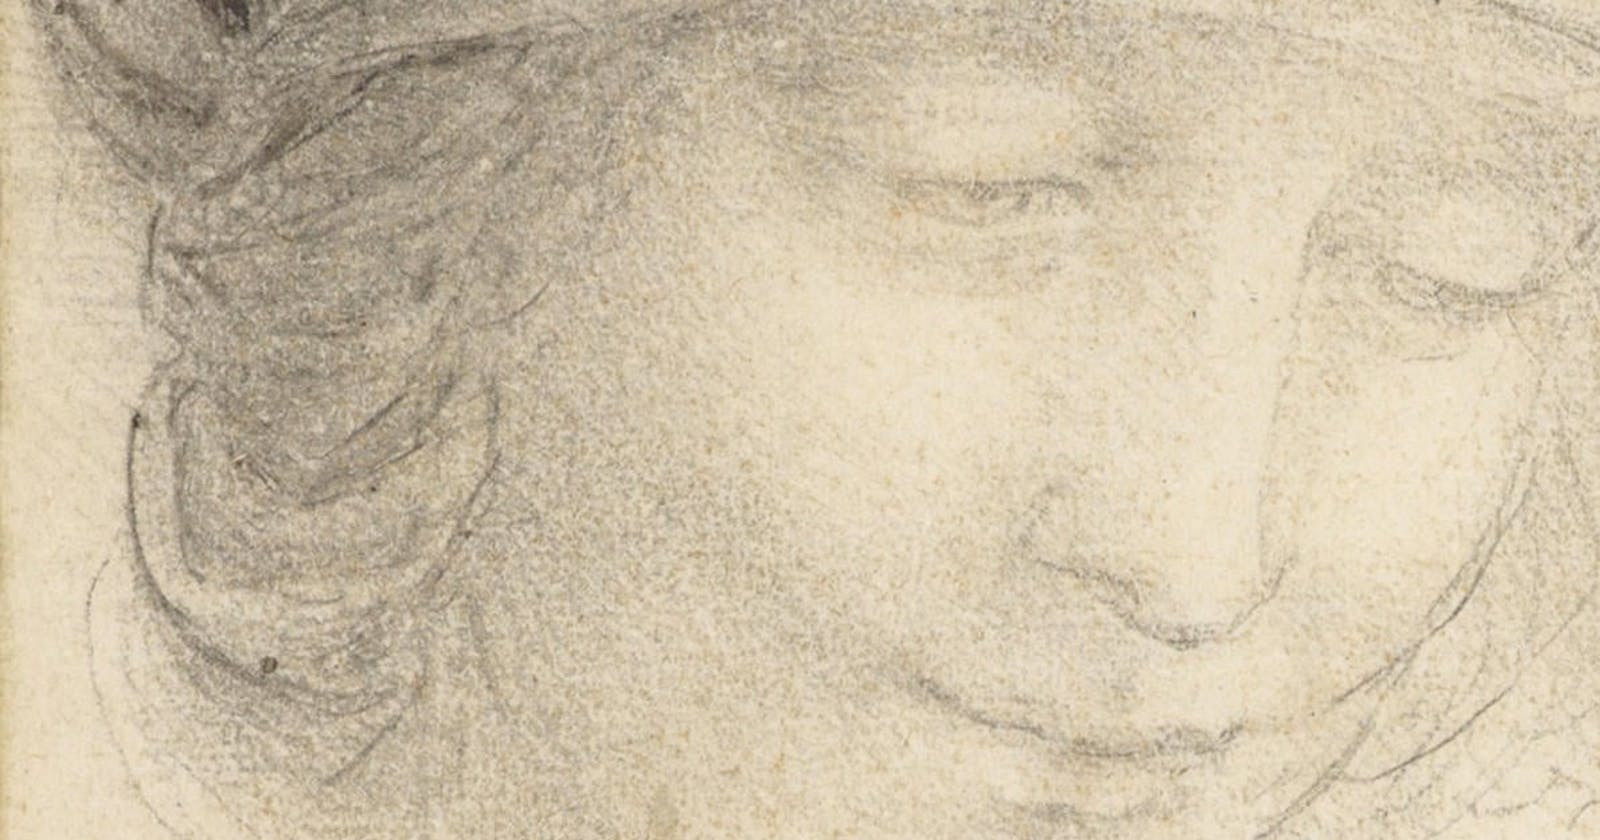 Unusual TODO List Of Leonardo Da Vinci